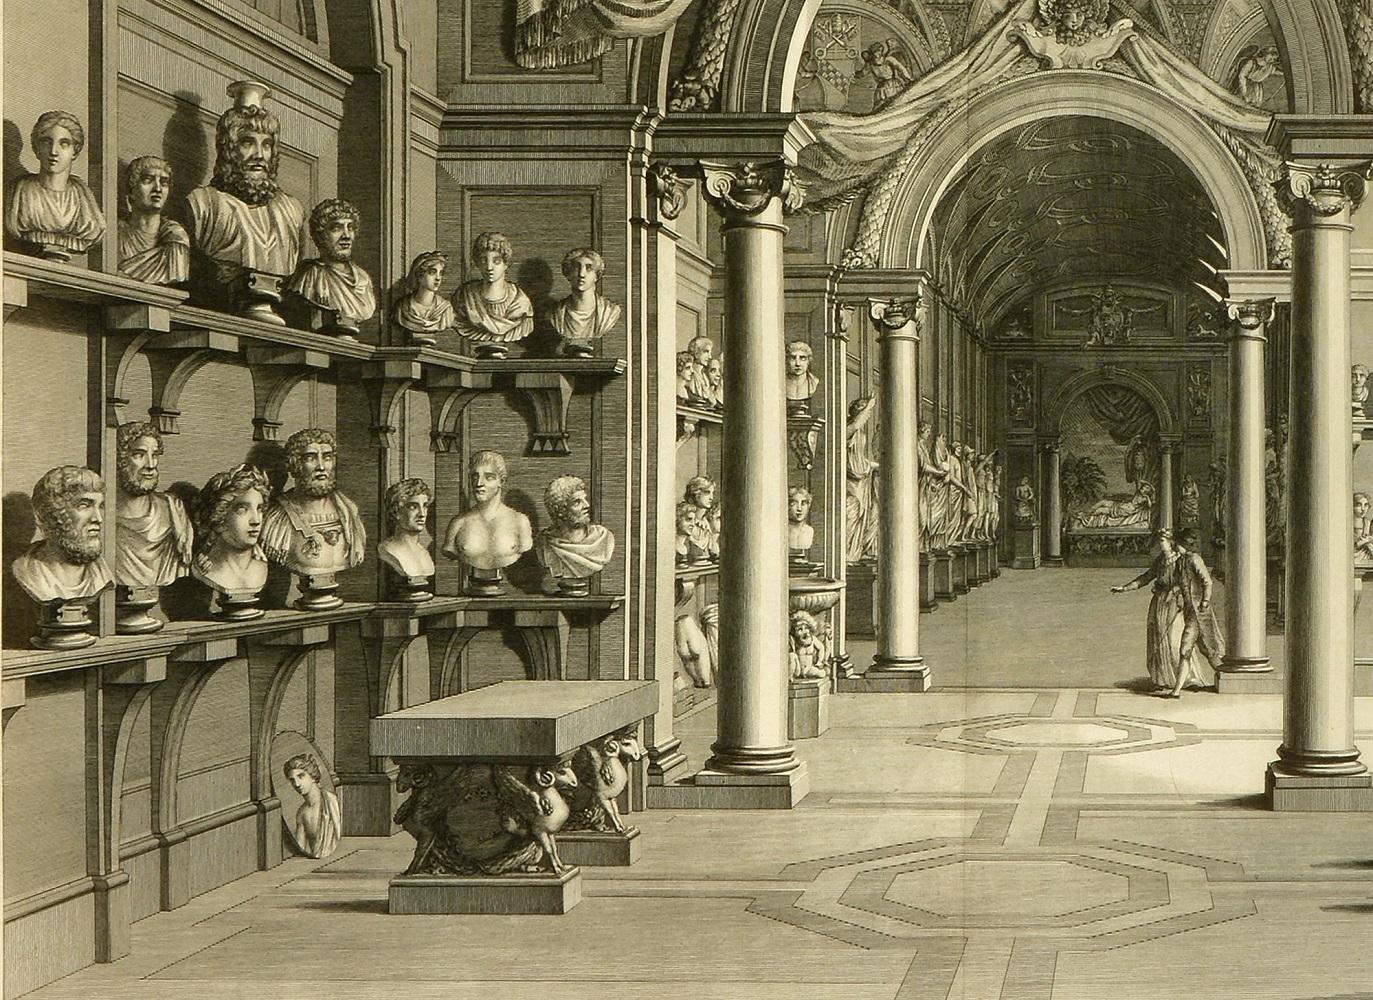 Prächtige große Tafel mit der Darstellung des Vatikanischen Museums am Ende des achtzehnten Jahrhunderts von Vincenzo Feoli (1750 - 1831).

Das Museum Pio-Clementino, benannt nach den beiden Päpsten, die seine Gründung beaufsichtigten, Clemens XIV.